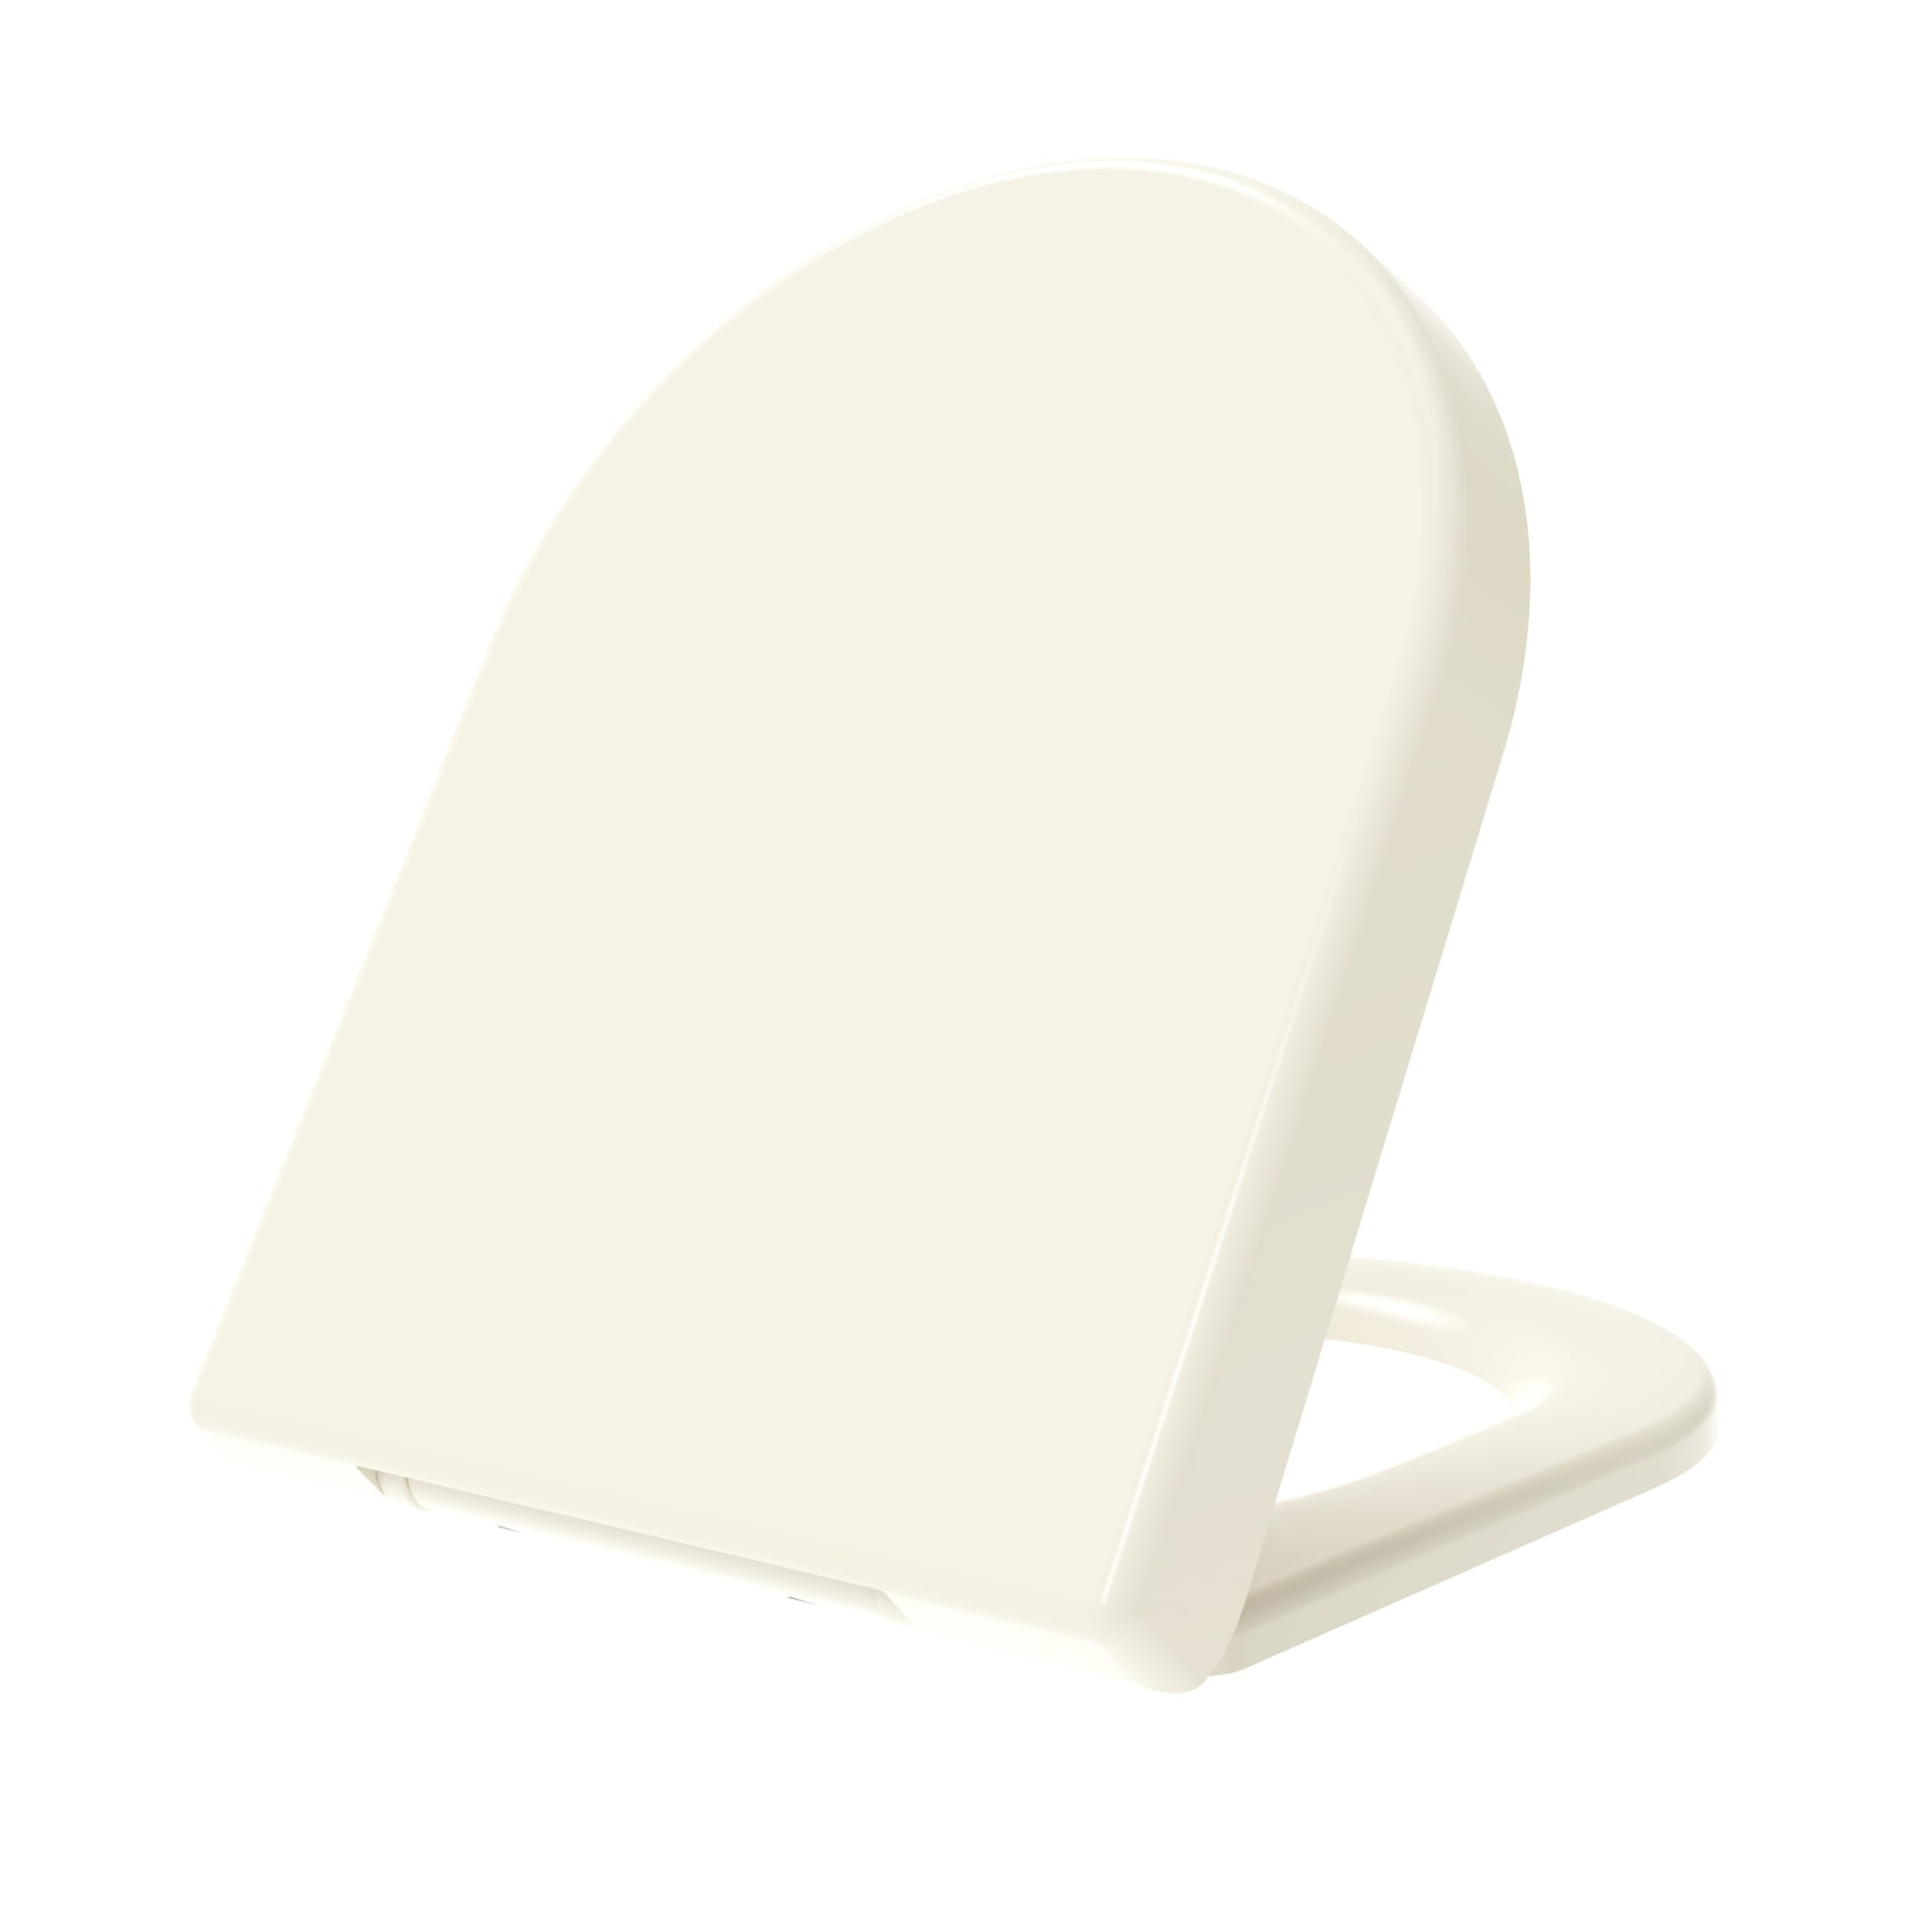 Grünblatt Premium Duroplast WC Sitz mit Absenkautomatik, abnehmbar zur Reinigung, Farbe Pergamon (D-Form)